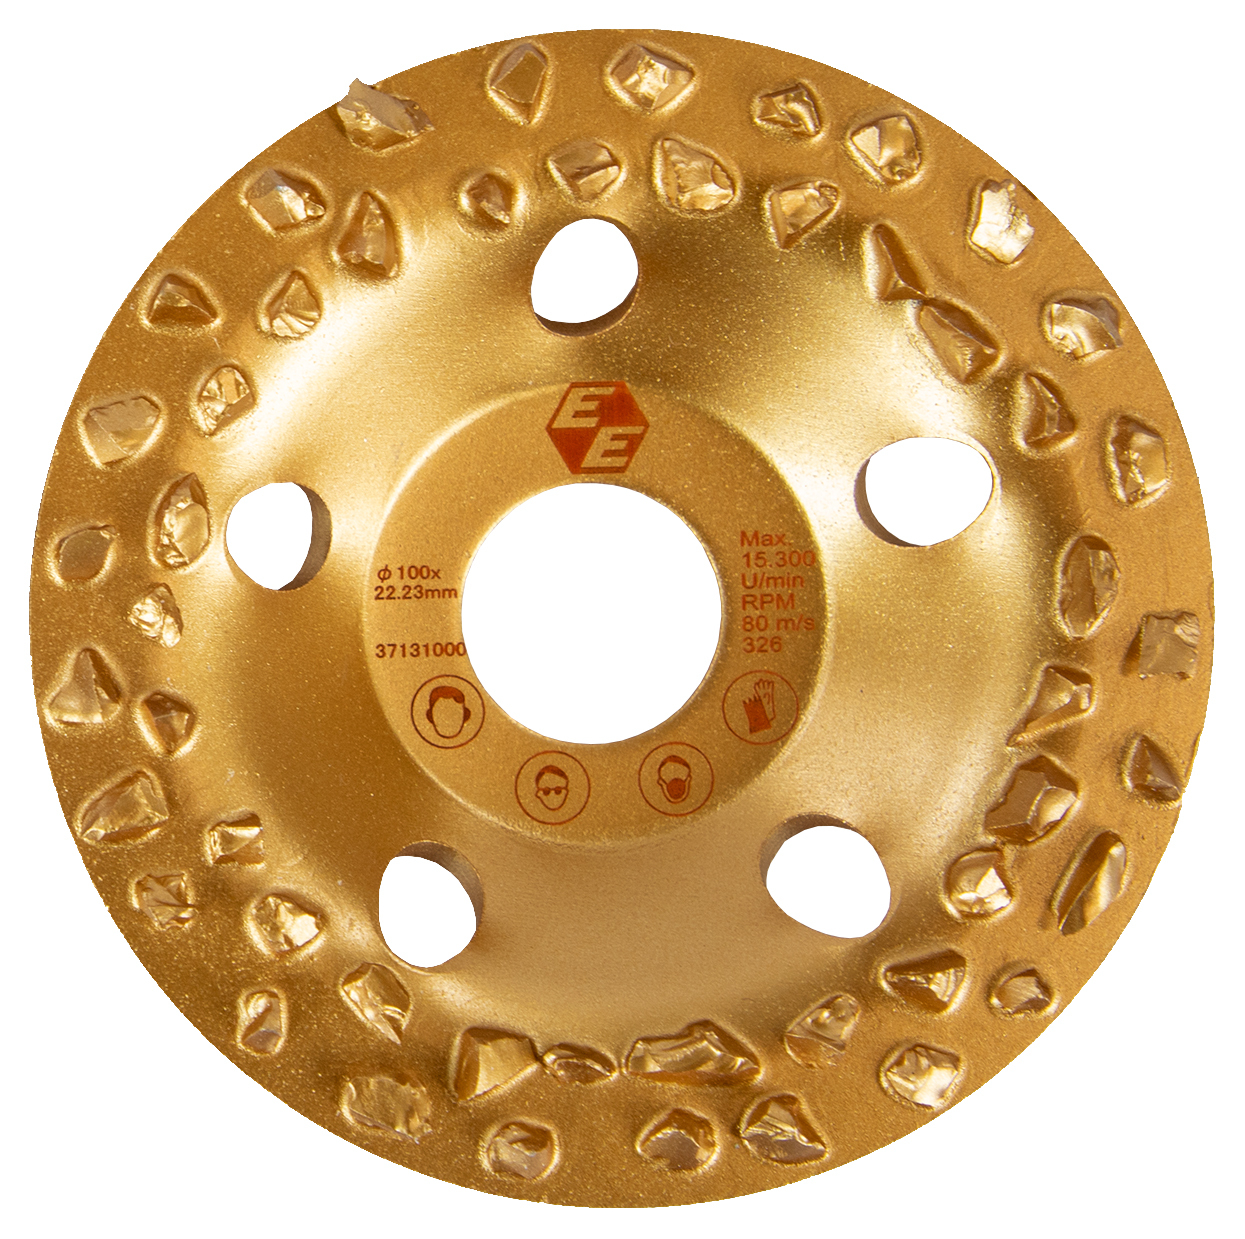 Hartmetall-Frässcheibe grob, Ø100mm (gold)